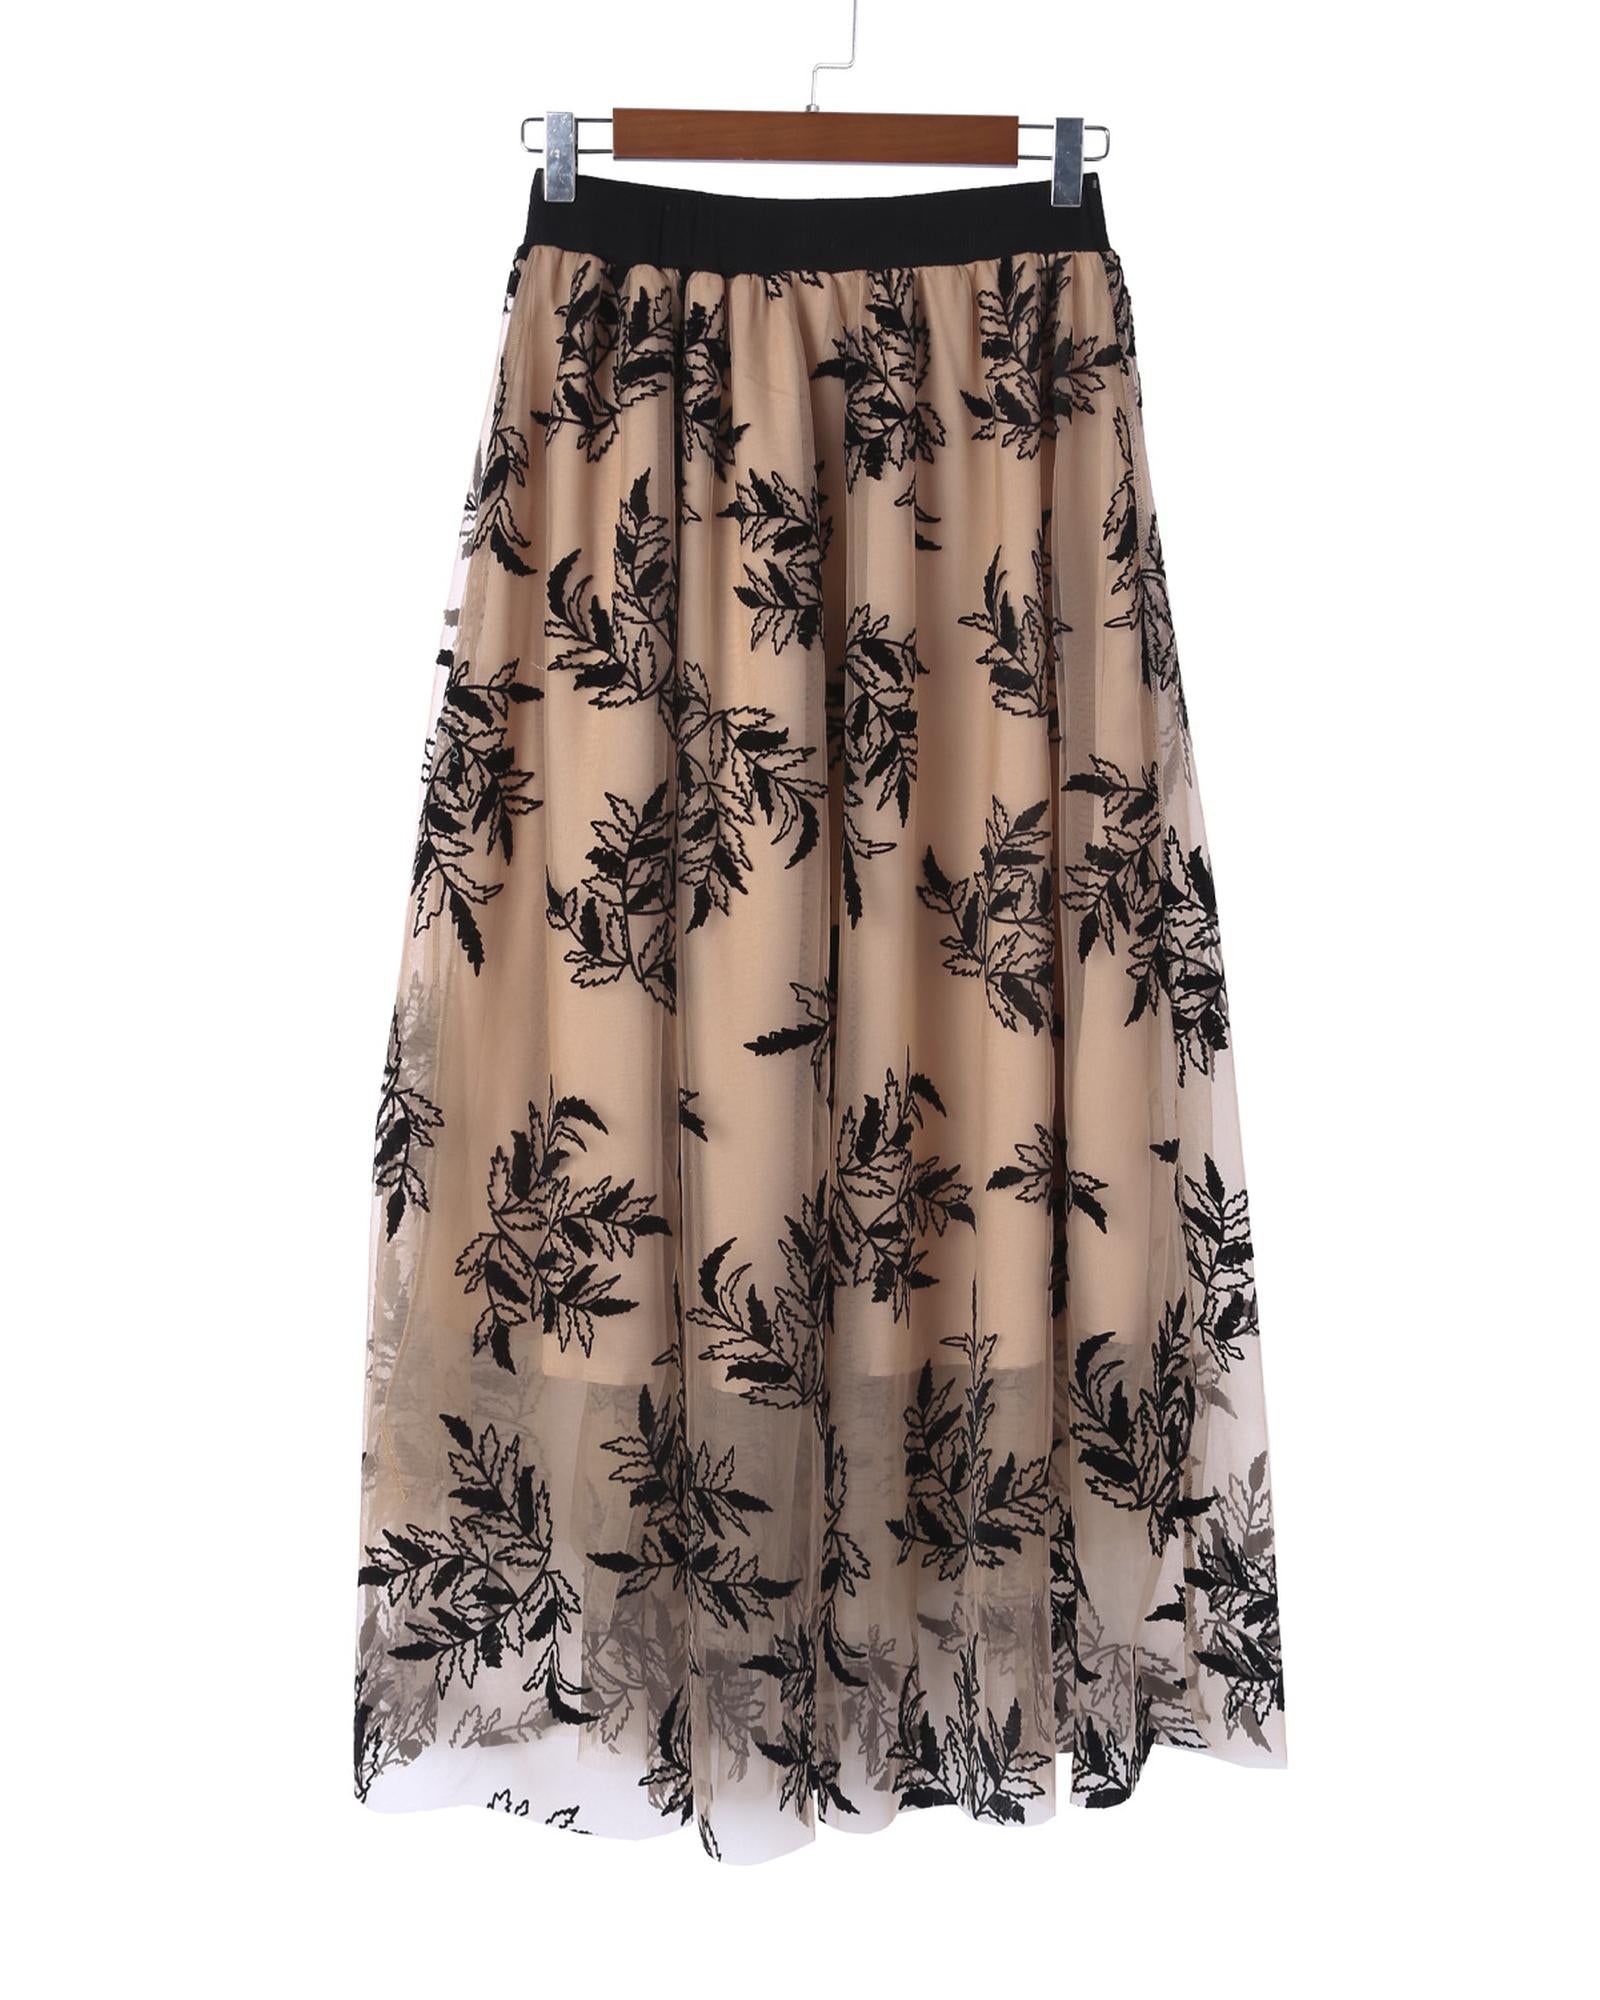 Embroidered High Waist Maxi Skirt - XL